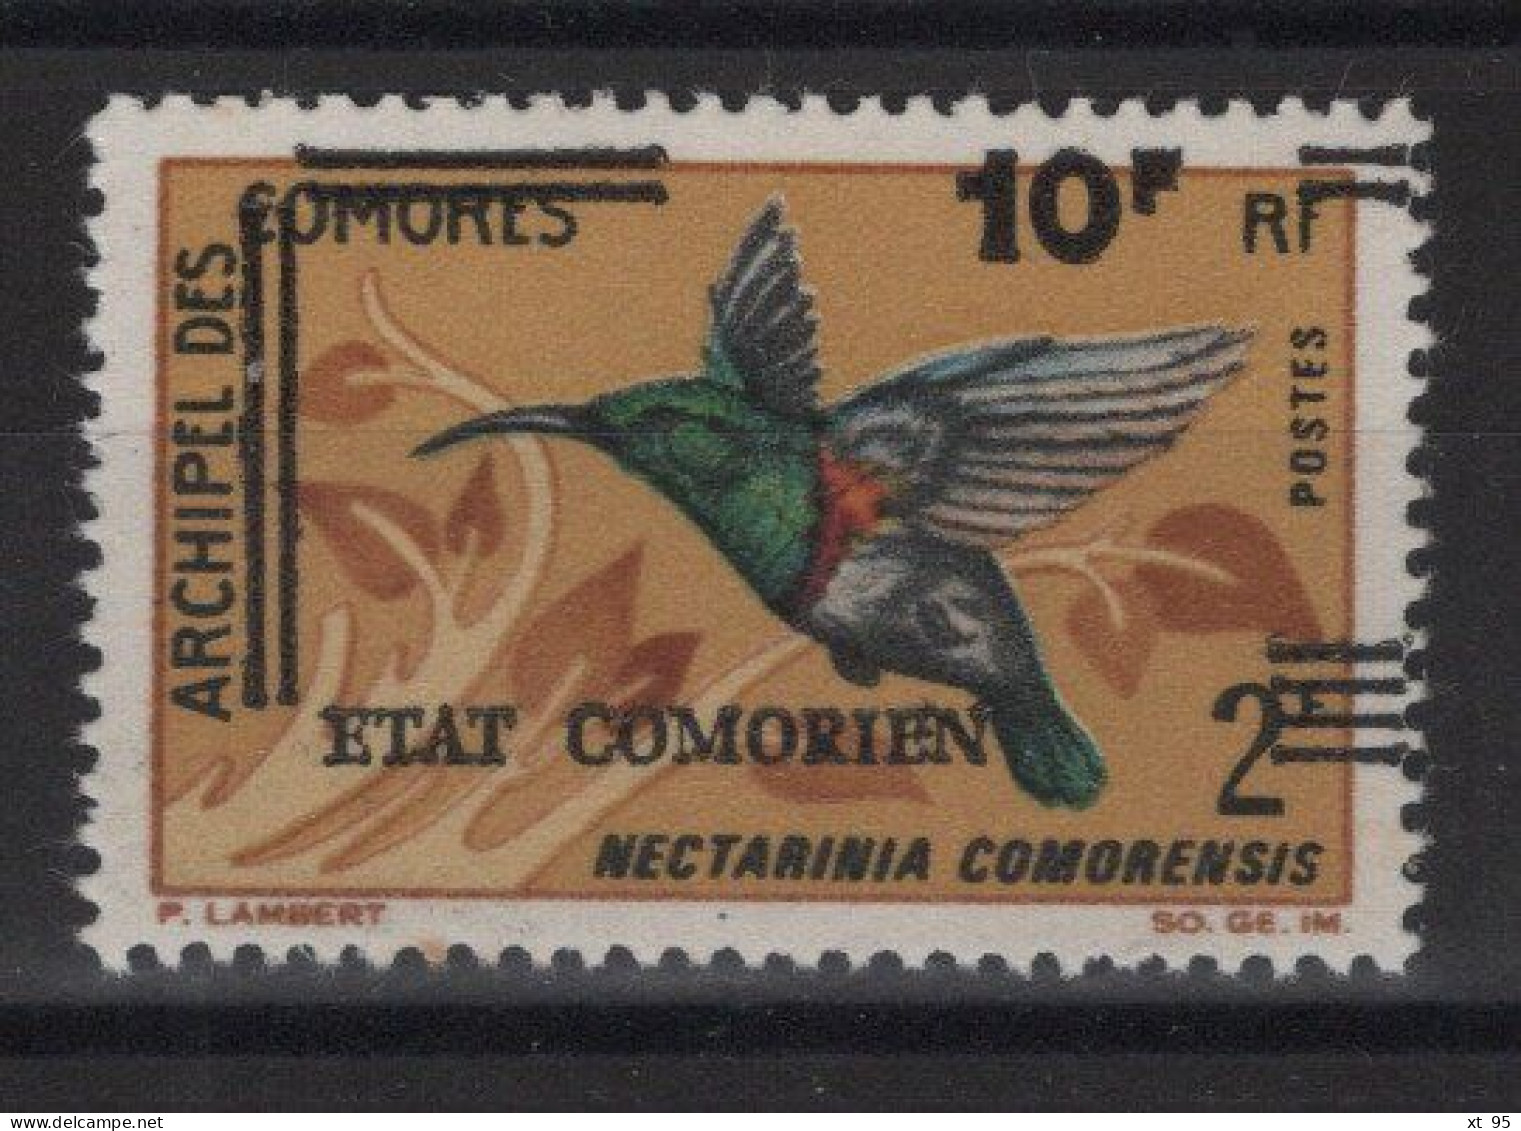 Comores - N°107 - Variete Surcharge Decalee - ** Neuf Sans Charniere - Komoren (1975-...)